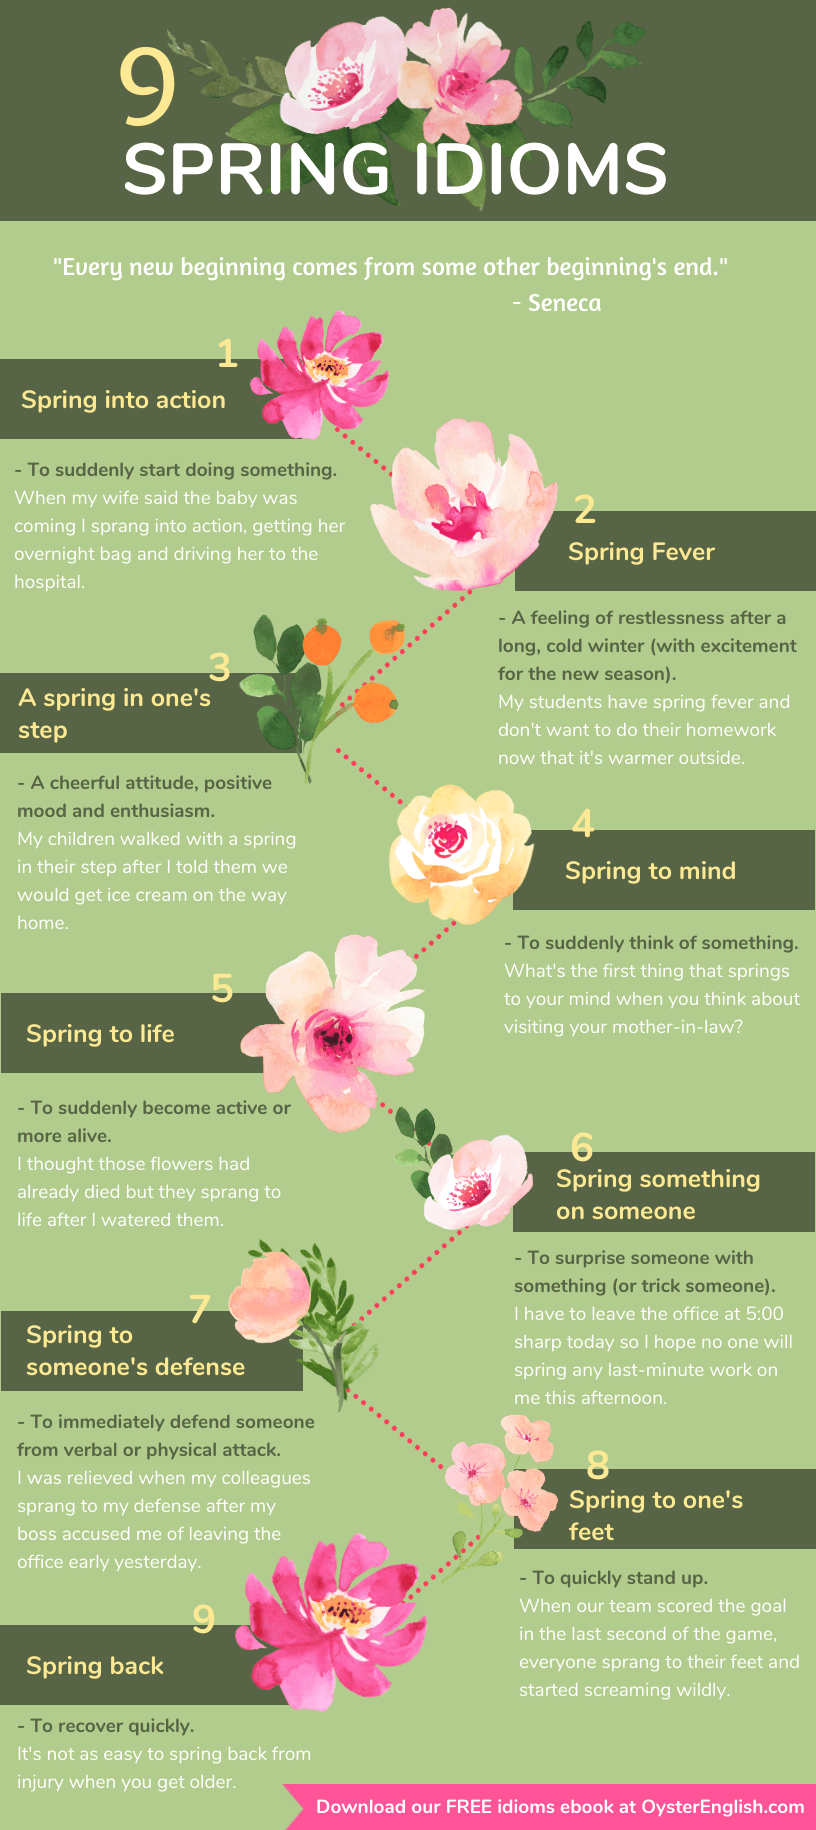 9 spring idioms